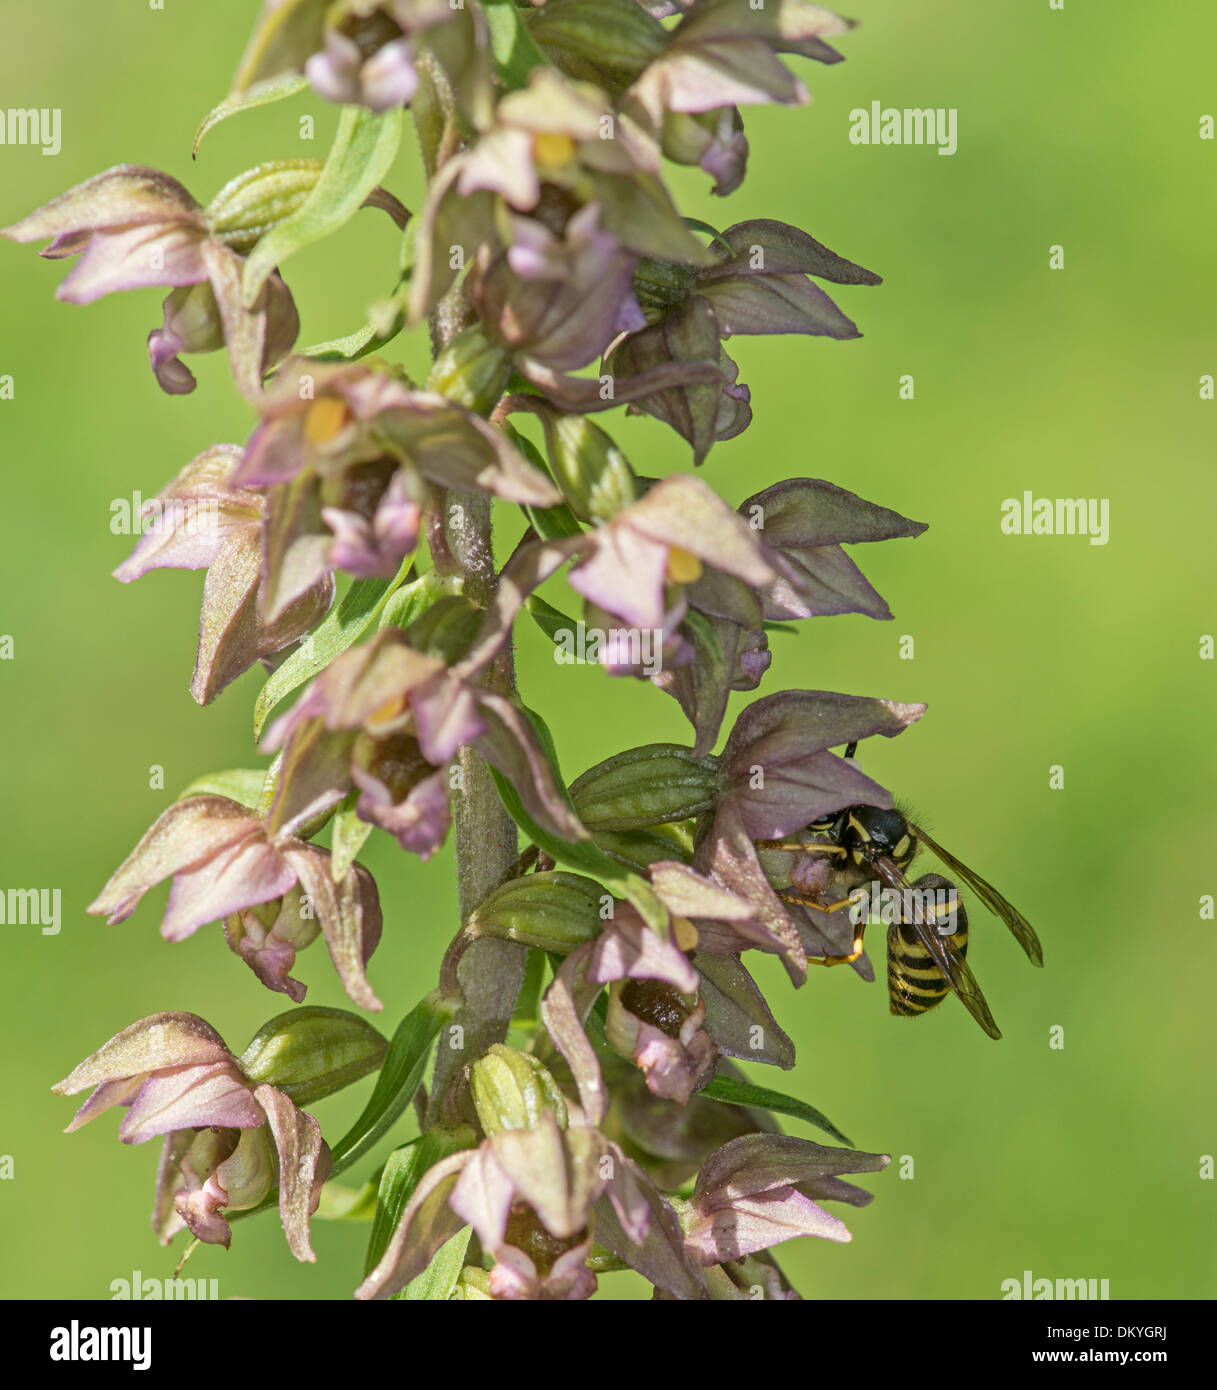 Wasp: Vespula sp. pollinating Broad Leaved Helleborine Orchid: Epipactis hellebore. Surrey, England. Stock Photo